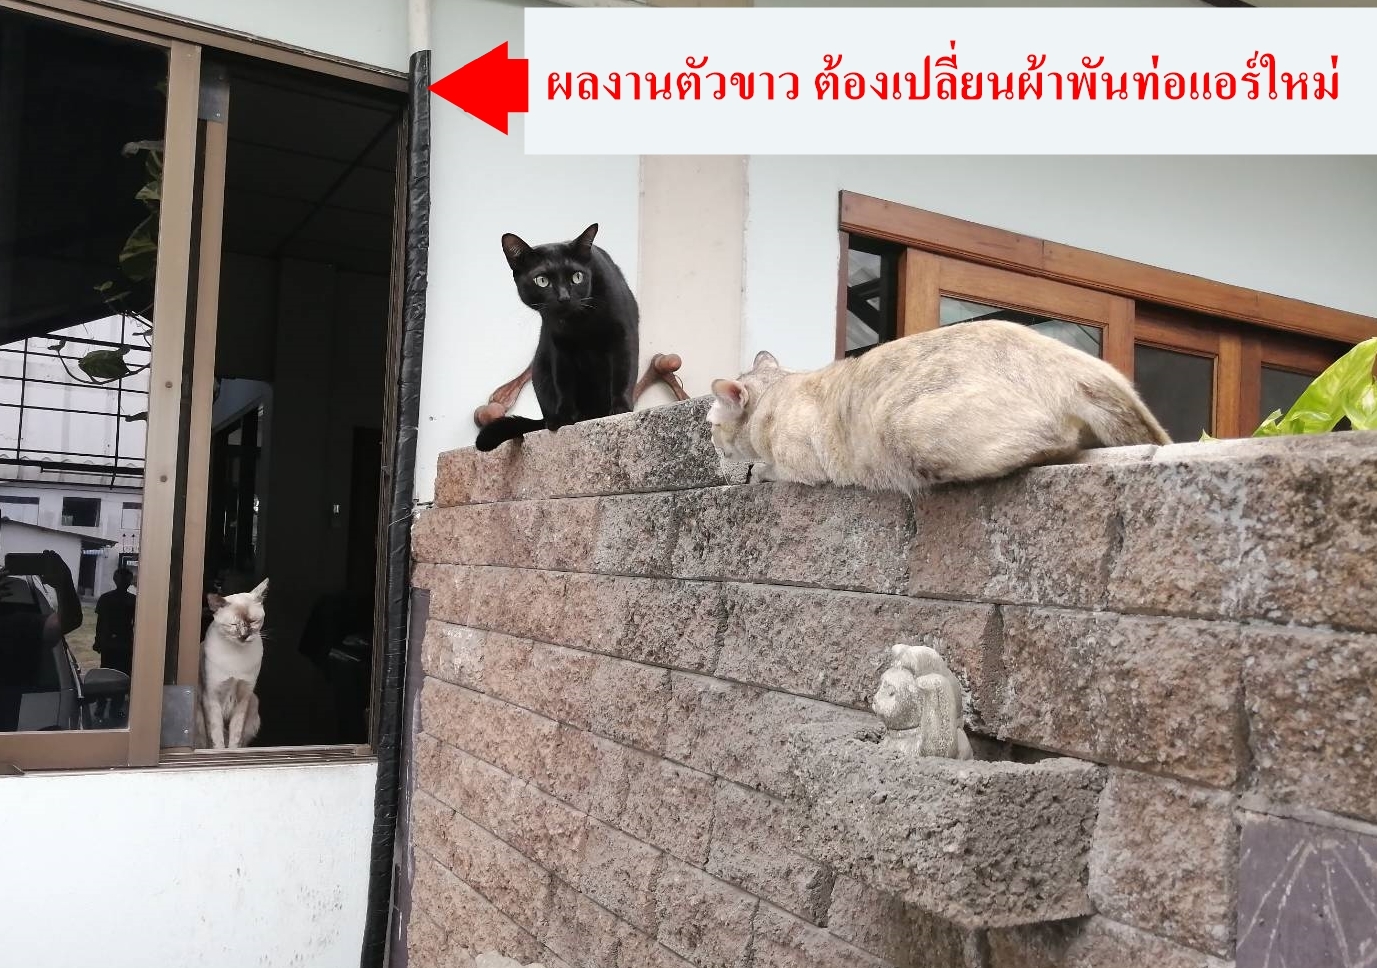 cat แมวดำ แมวขาว แมวสี วิธีเลี้ยงแมว การเลี้ยงแมว  อาหารแมว แมวข้างบ้าน แมวจรจัด แมวชอบกัดกัน ทำหมันแมว